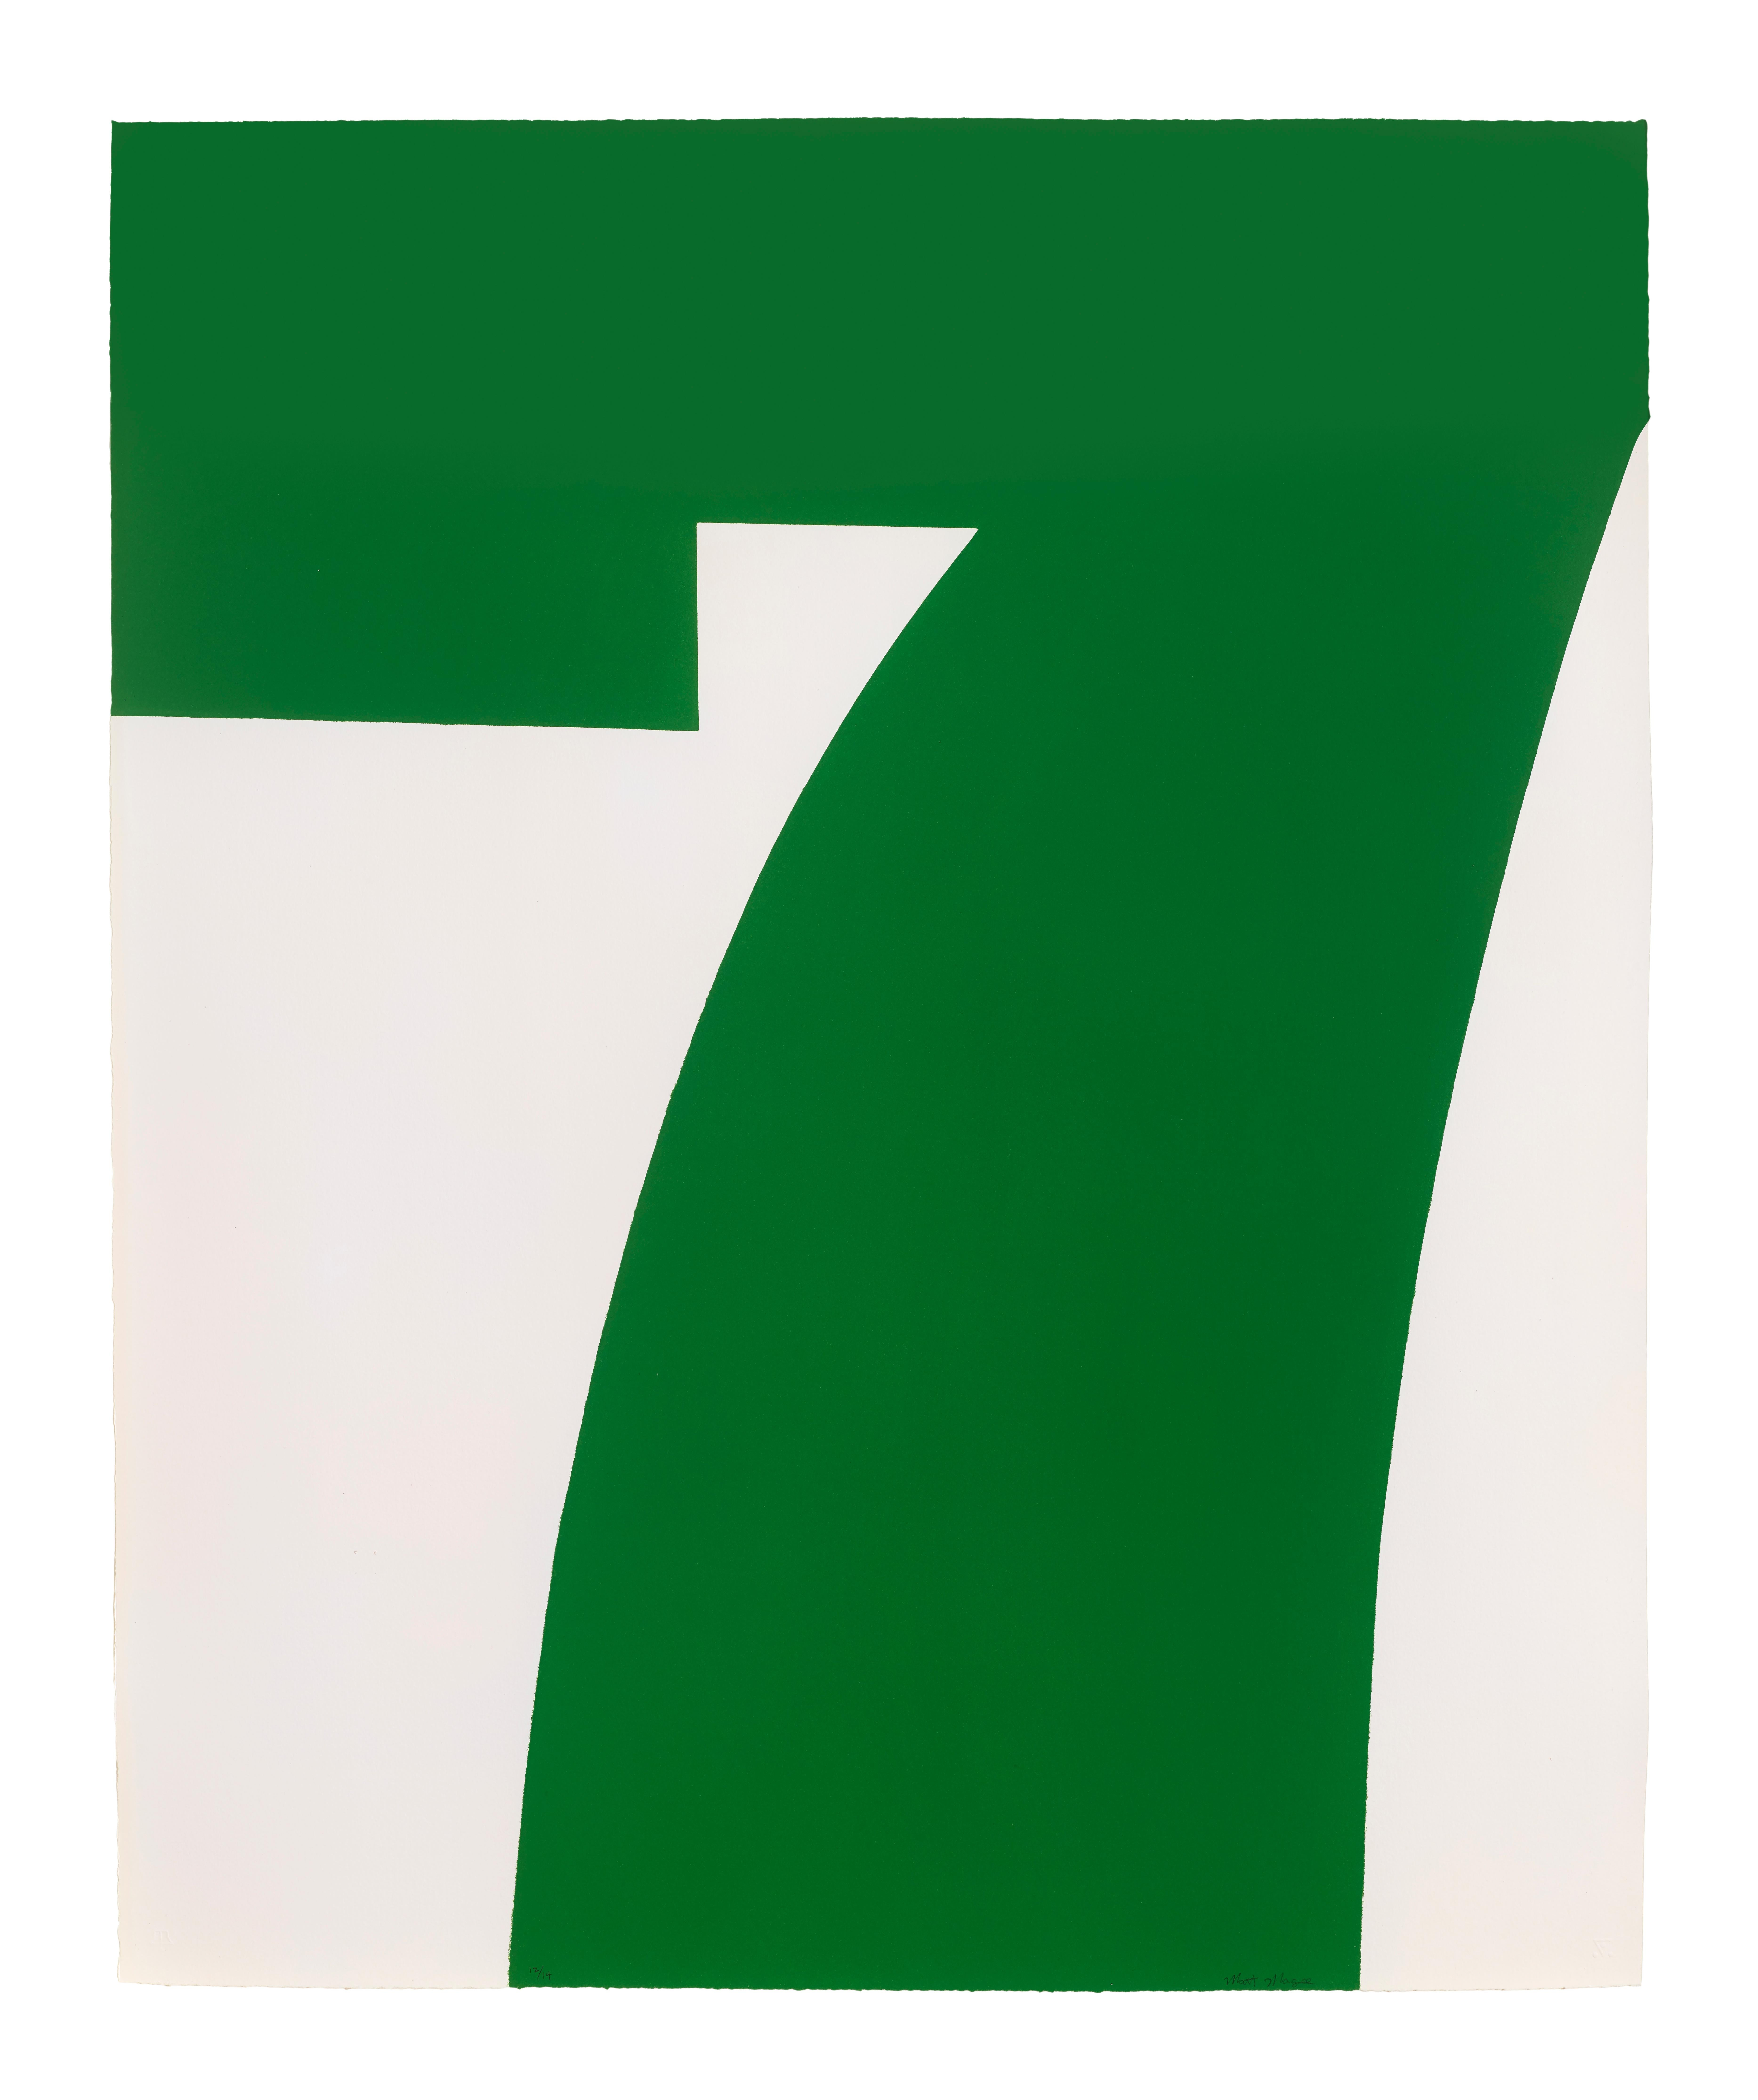 Green Seven - Print by Matt Magee